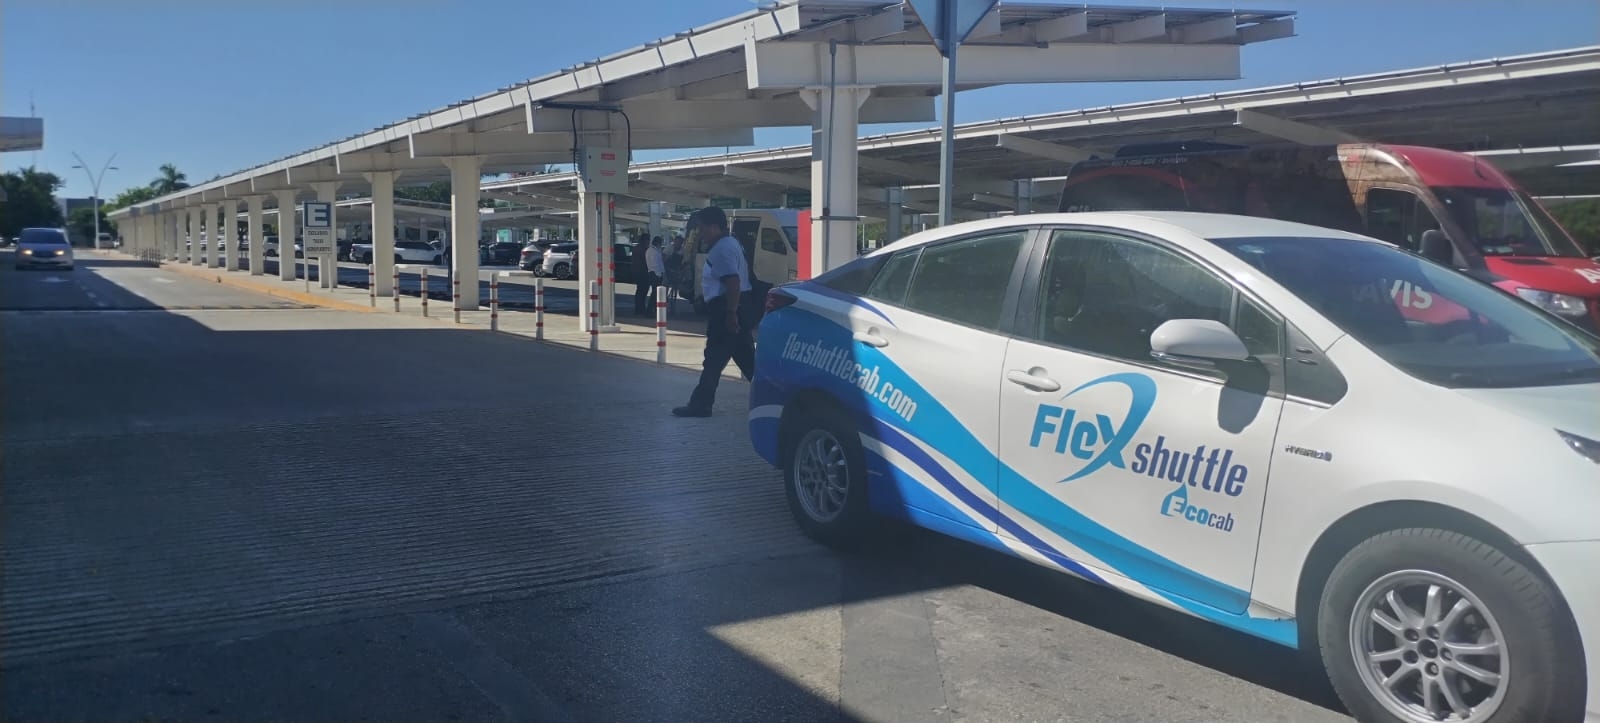 Los taxistas del aeropuerto de Mérida reanudaron labores tras dialogar con una representante de FlexShuttle